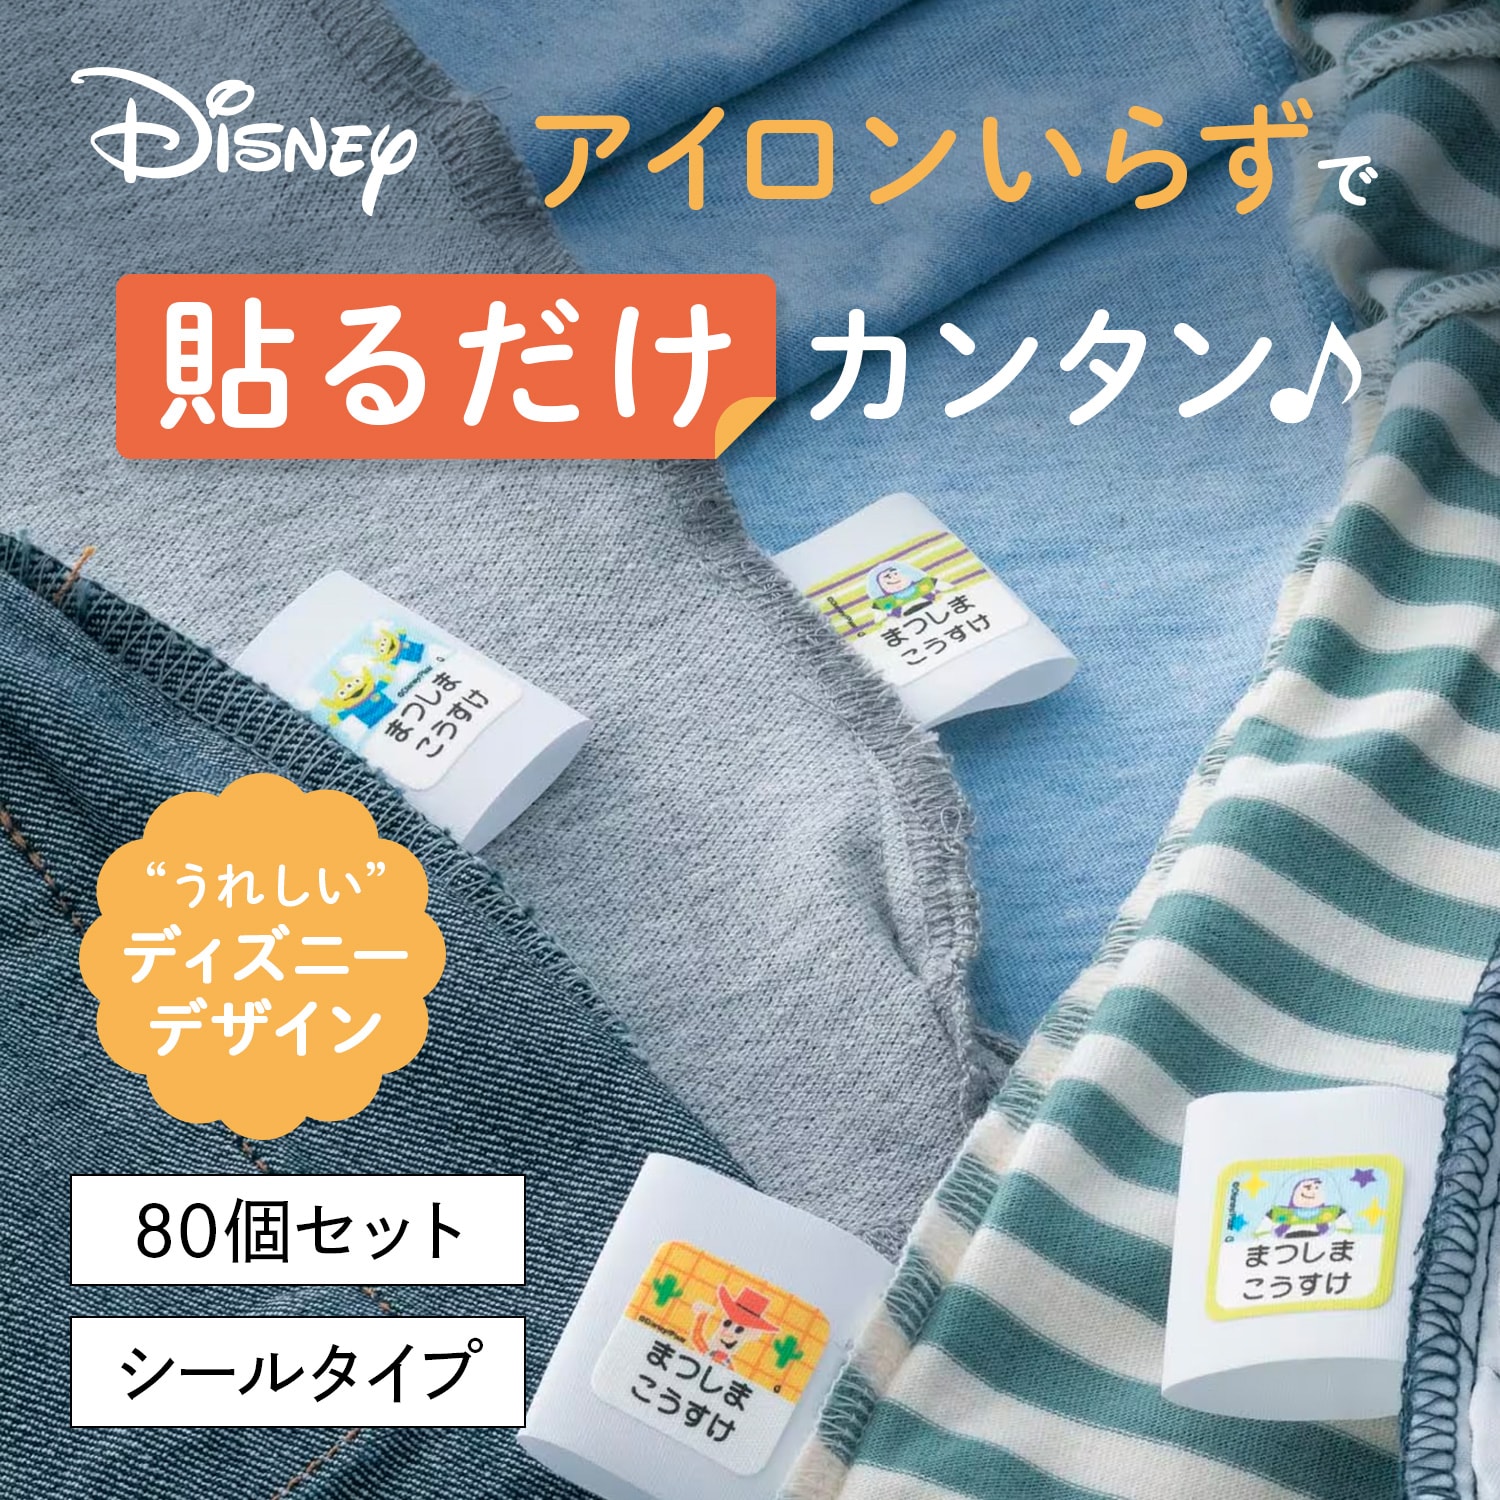 【ディズニー/Disney】お名前シール2枚セット 洋服タグ用(選べるキャラクター)画像